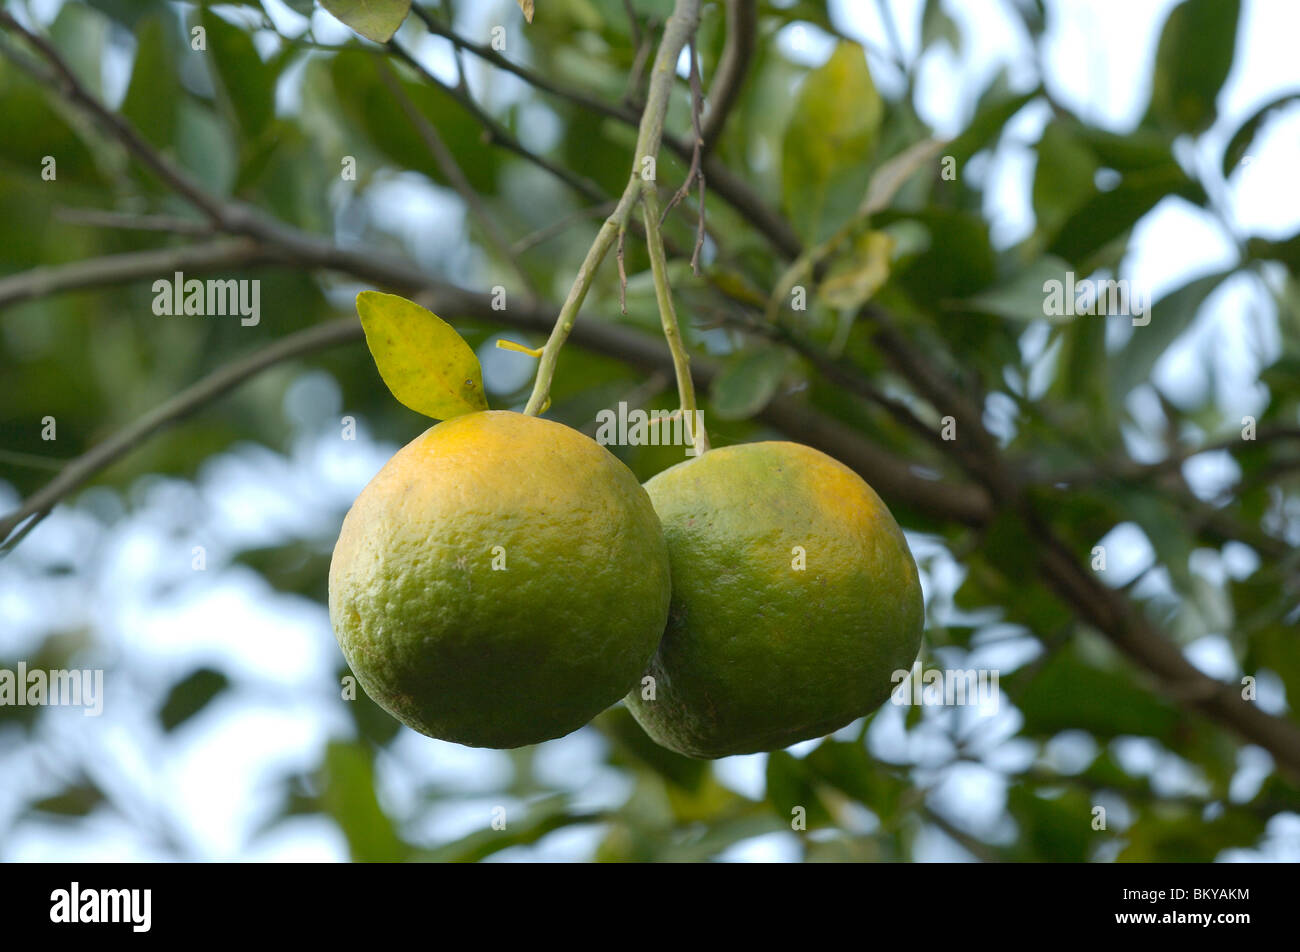 Orange fruits on trees at Ralegan Siddhi near Pune, Maharashtra, India Stock Photo